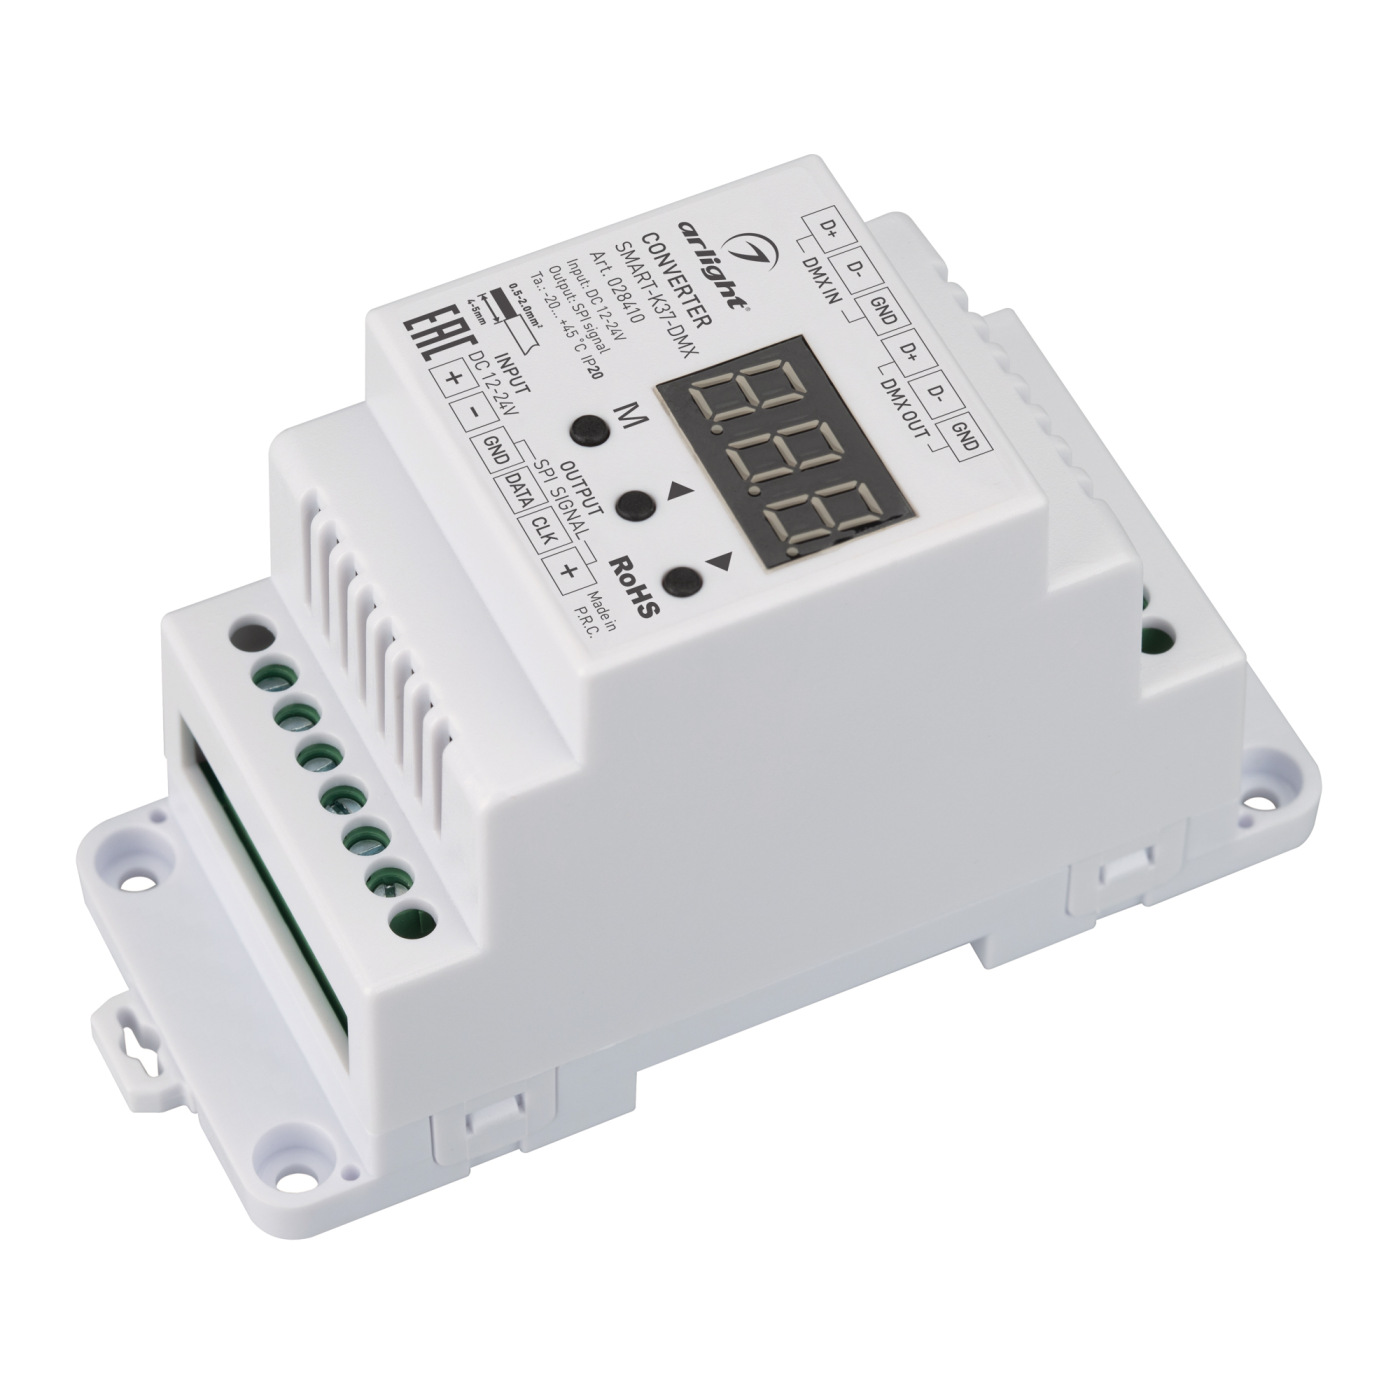 Конвертер SMART-K37-DMX (12-24V, SPI, DIN, 2.4G) (Arlight, Металл) 40m smart handheld rangefinder цифровой мини измеритель расстояния